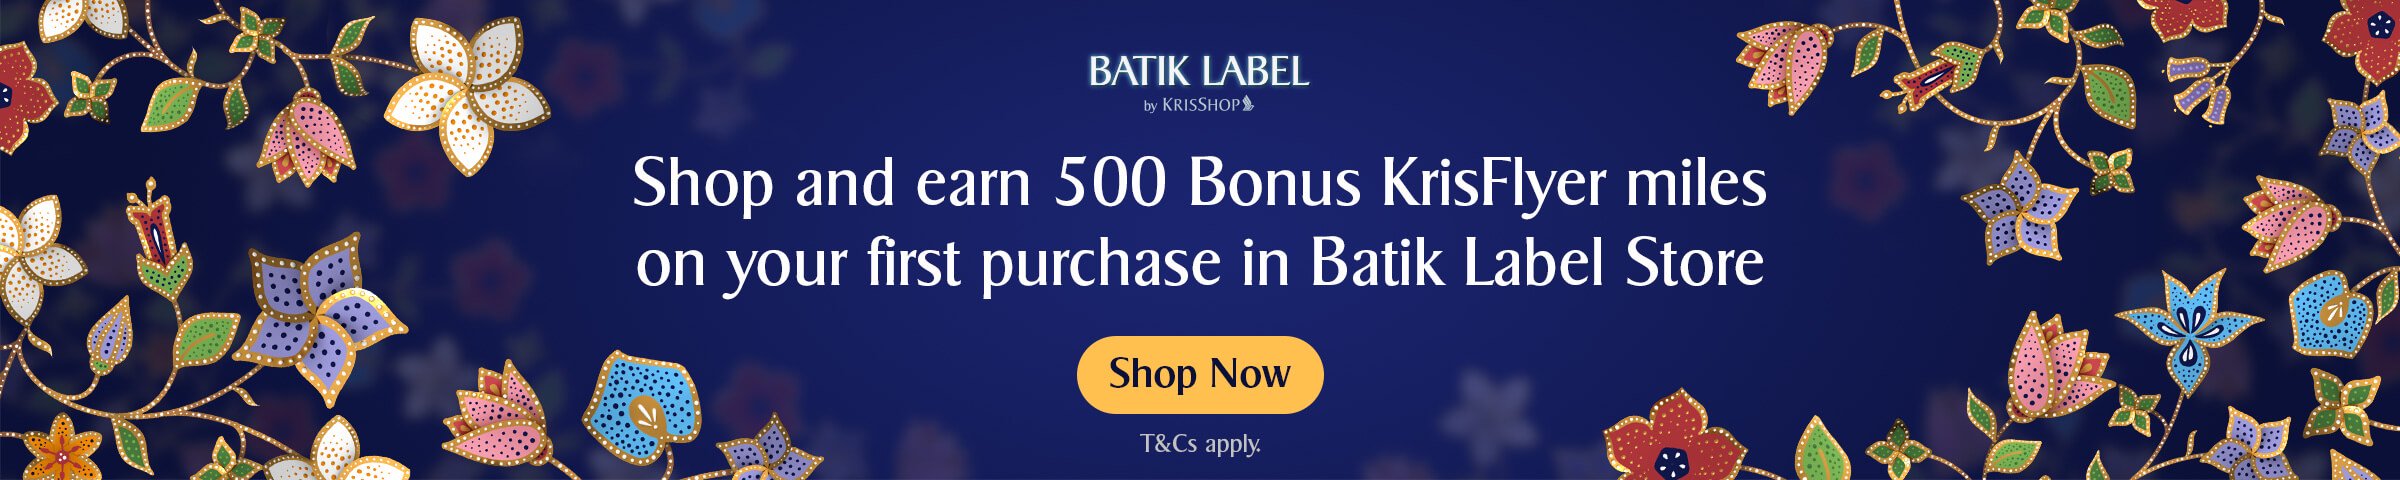 KrisShop Batik Label Concept Store